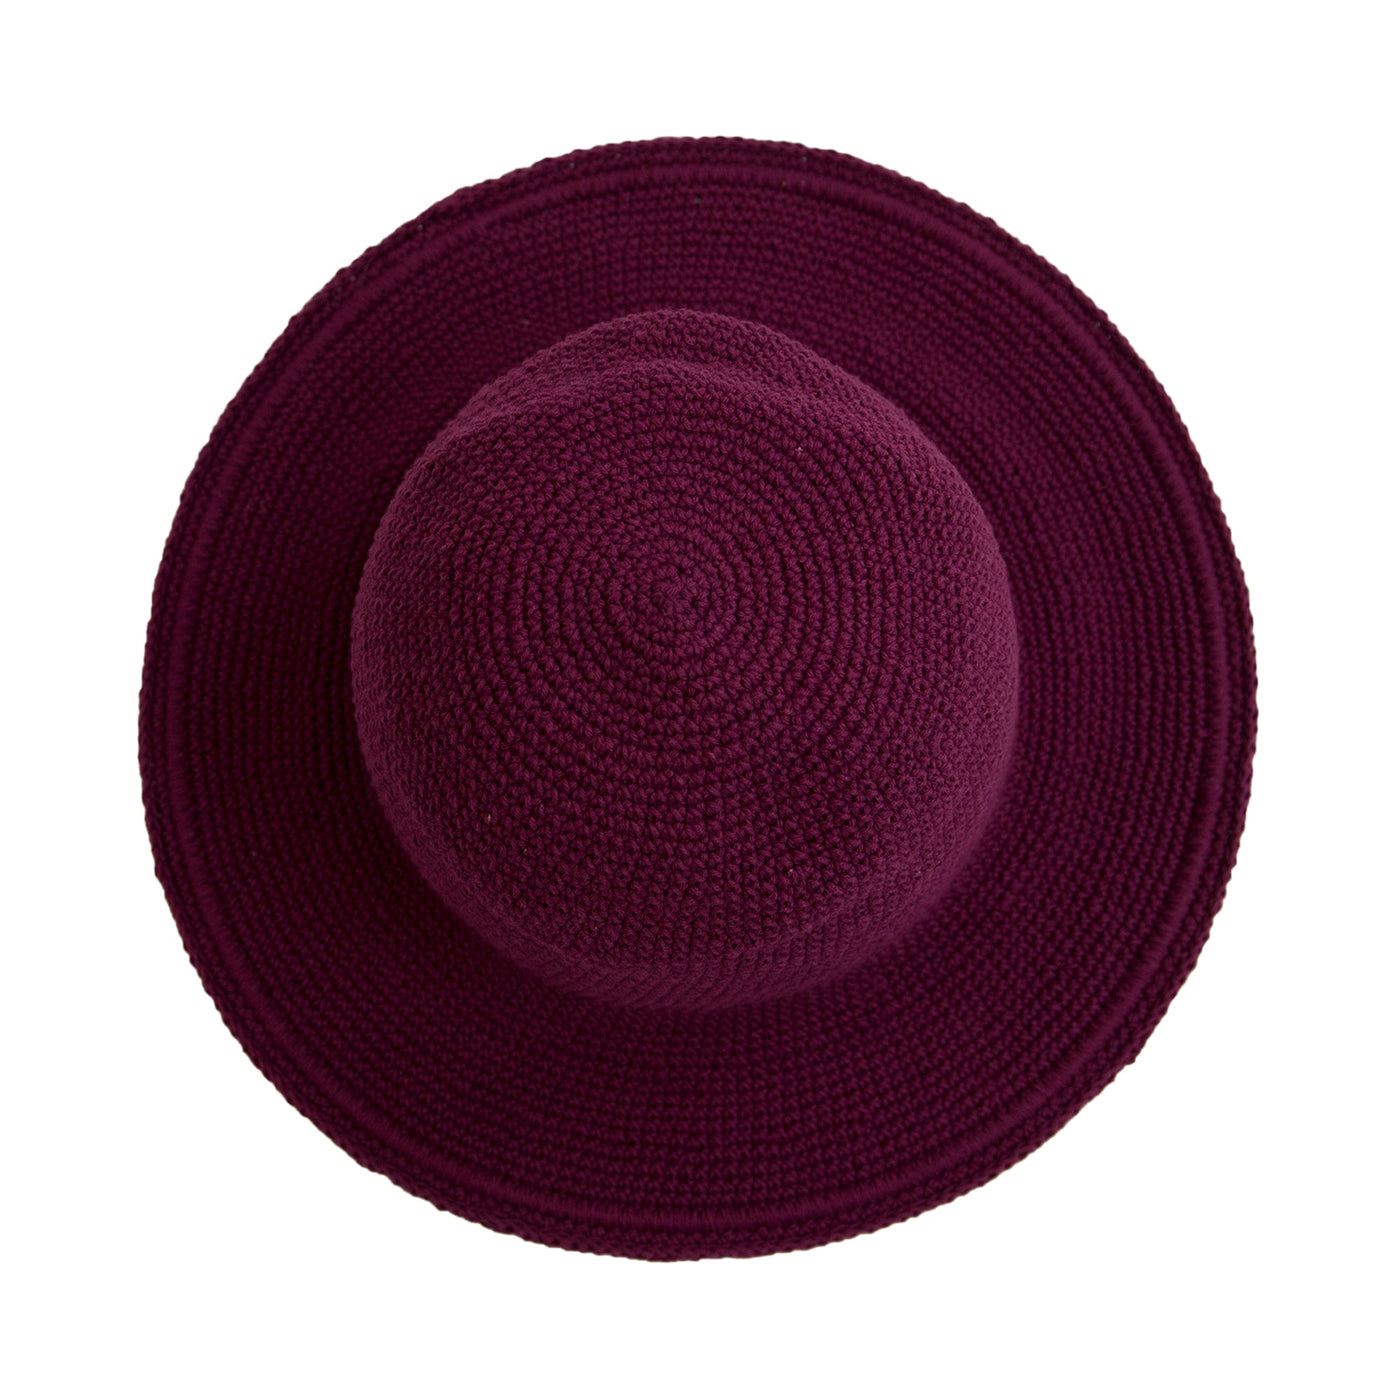 CROCHET - Women's Crocheted Brim Hat